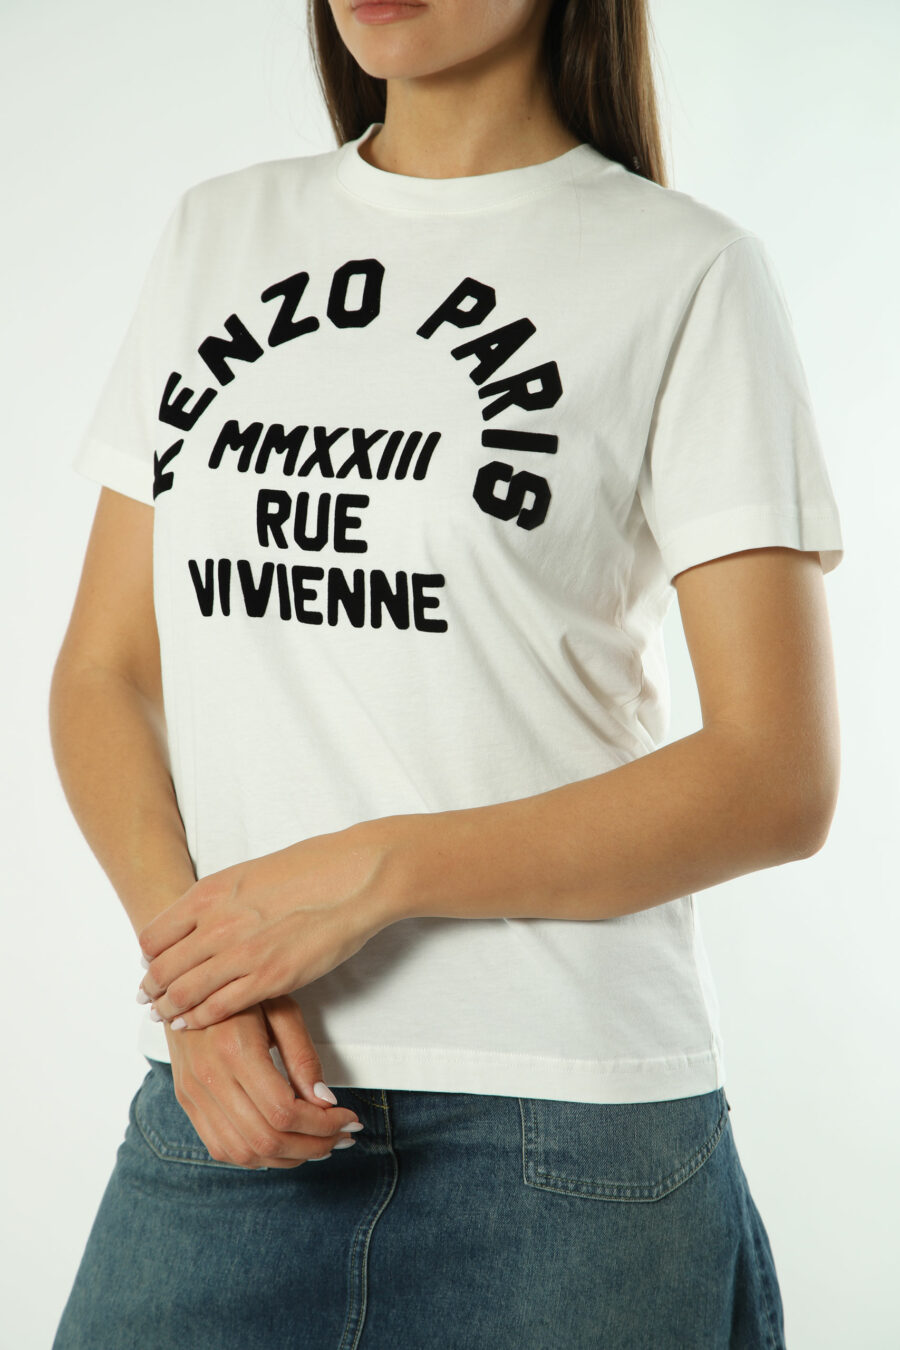 T-shirt branca com maxilogo preto "rue vivenne" - Fotos 1321